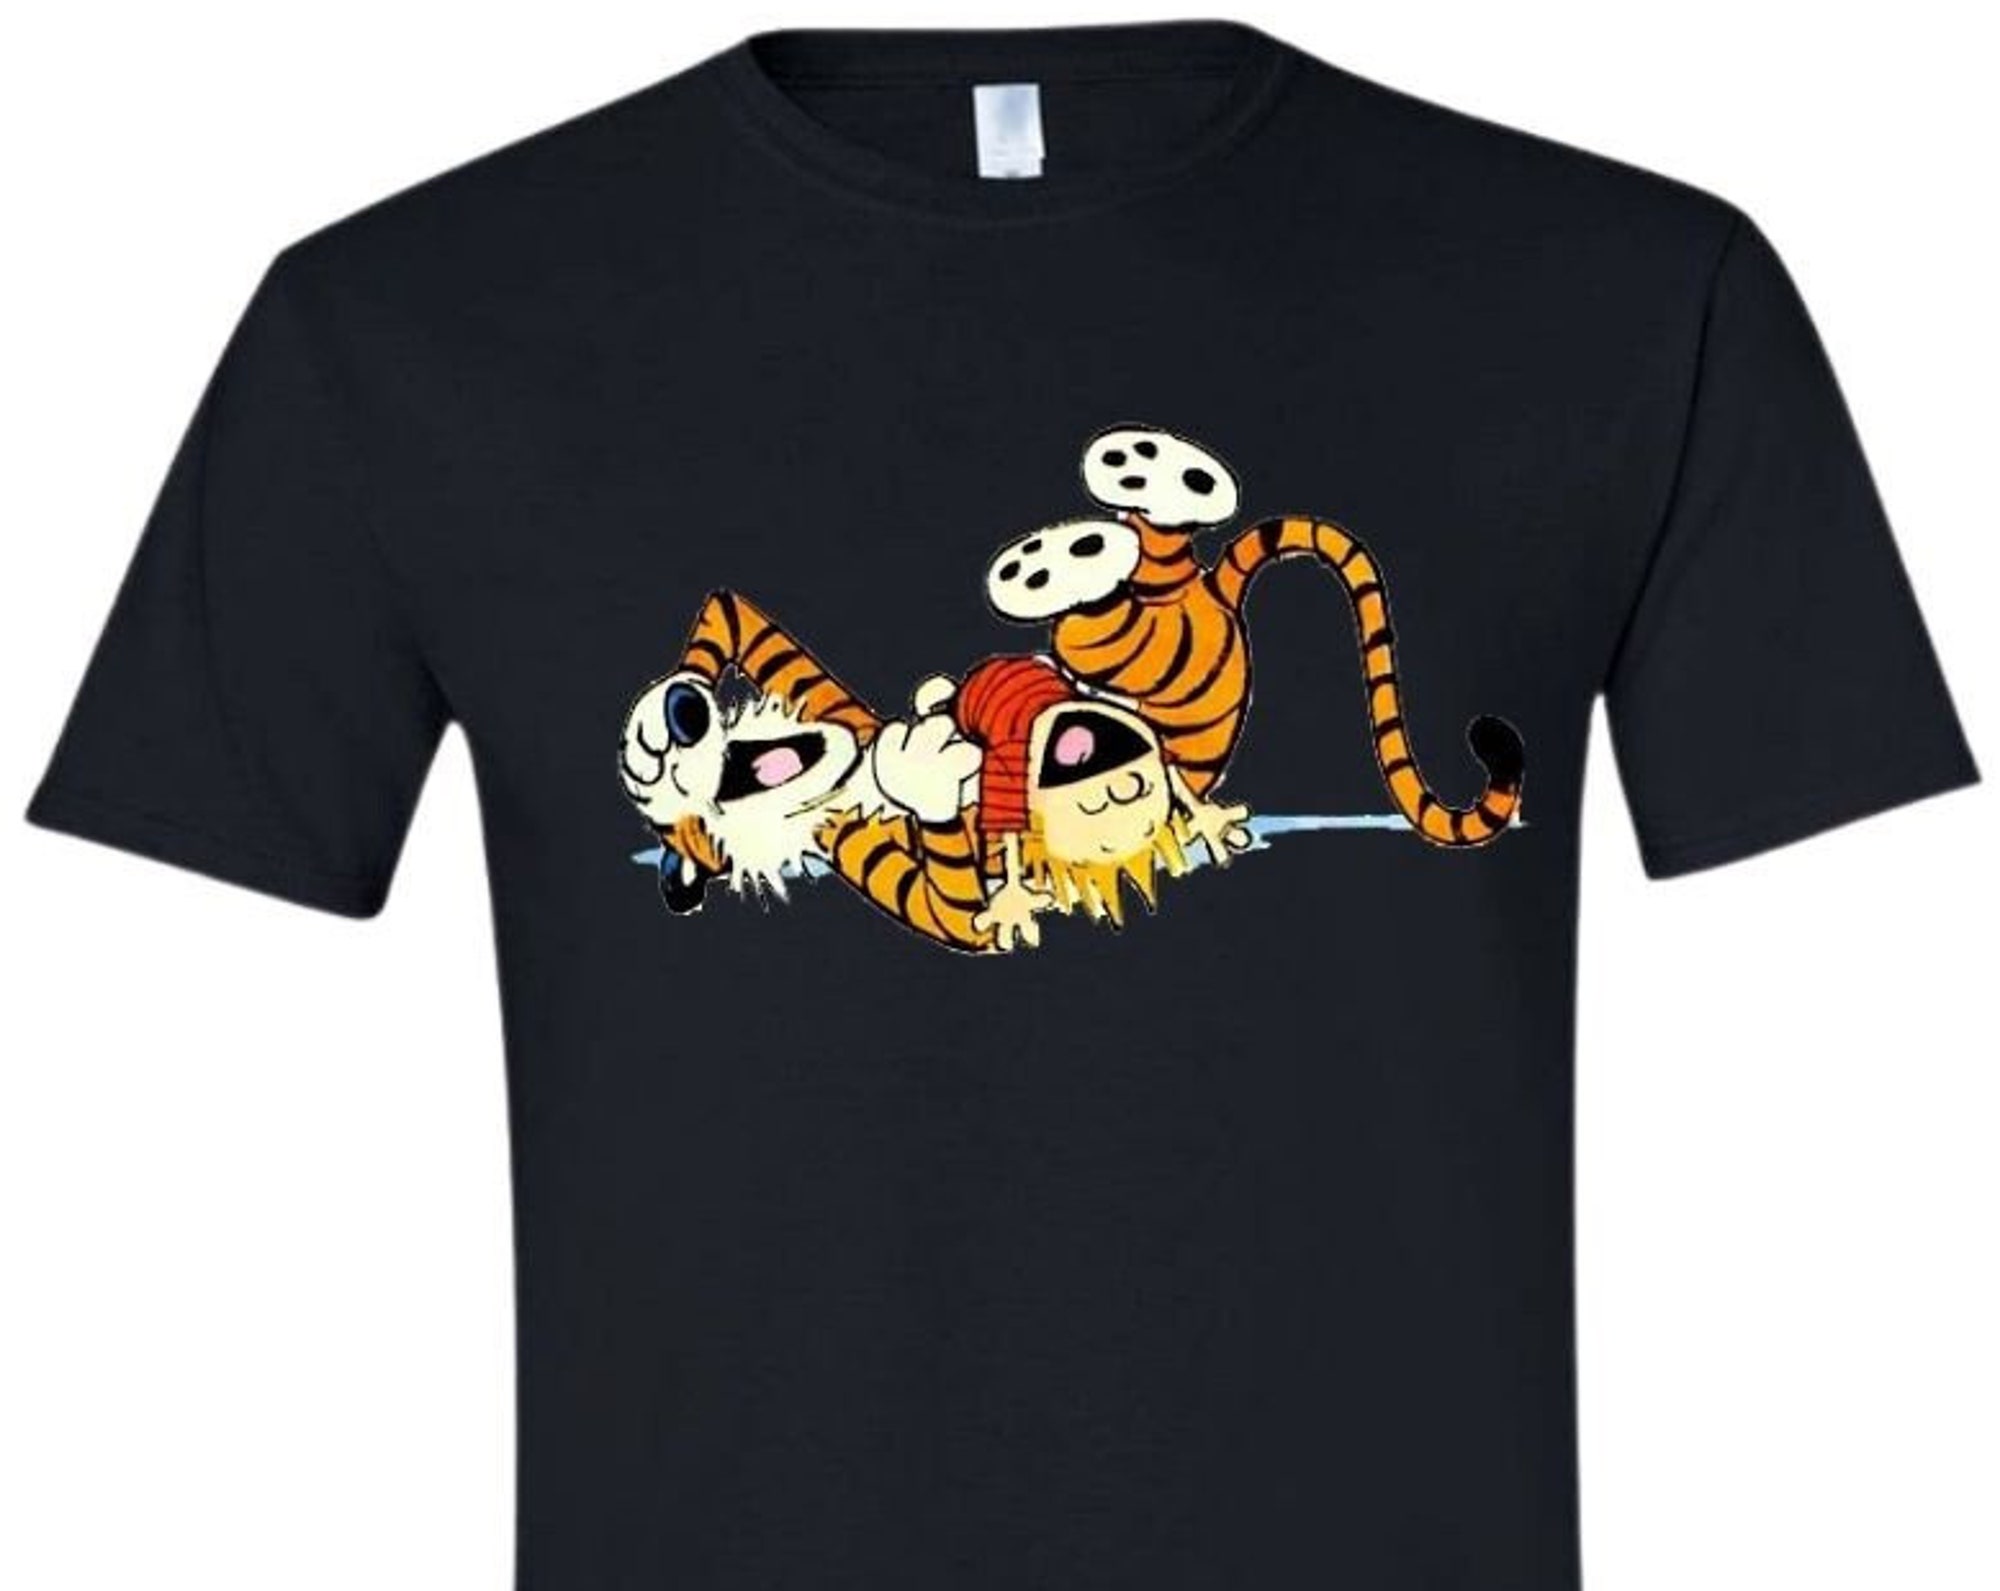 Discover C & H laughing T-Shirt, Shirts and Tops, Printed t shirts, Gildan tees